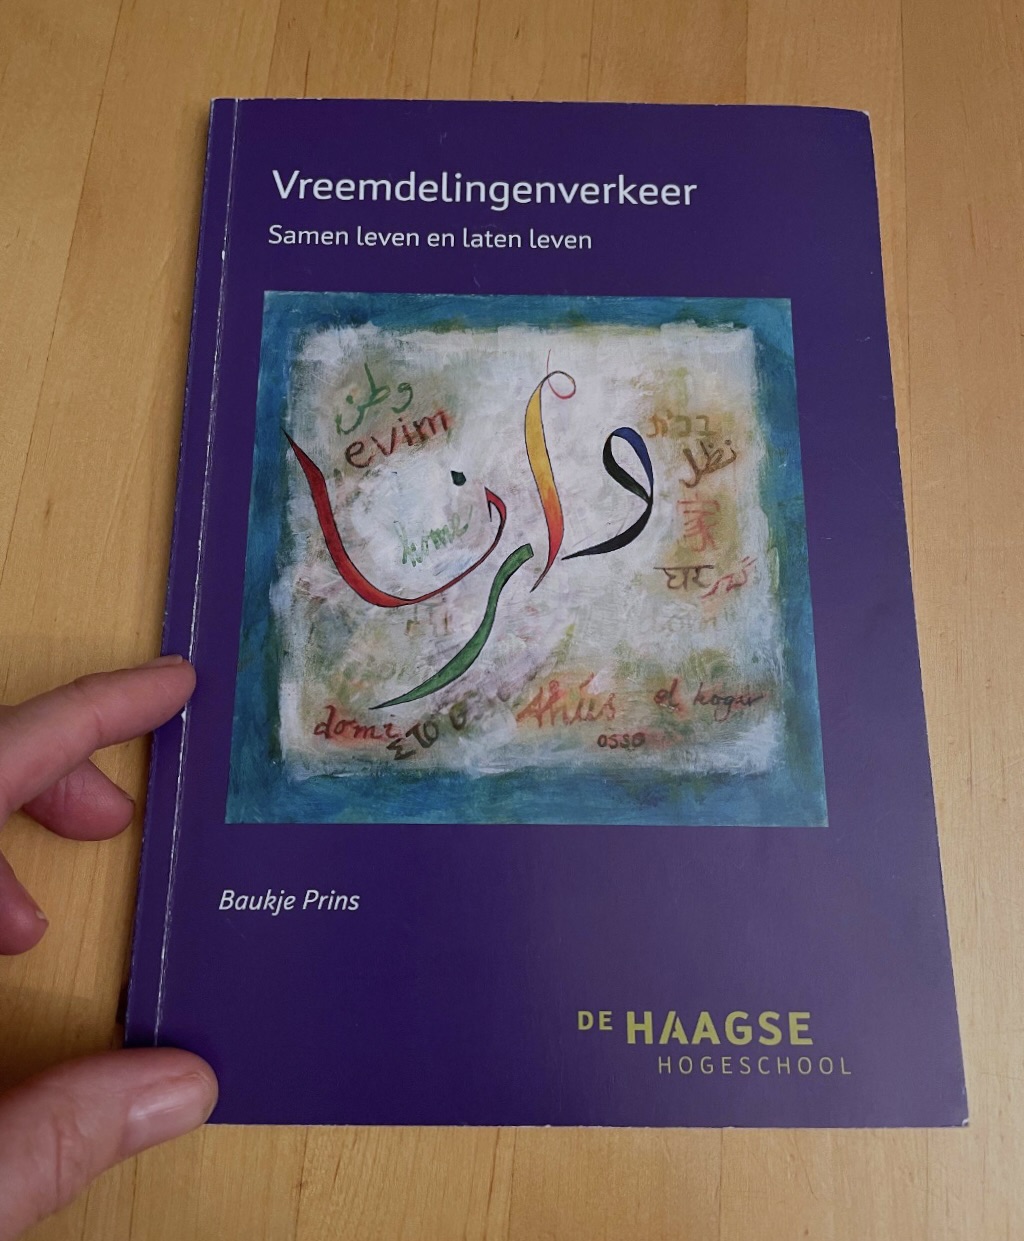 In opdracht van Haagse Hoogeschool, boekje bij Intreerede van Baukje Prins